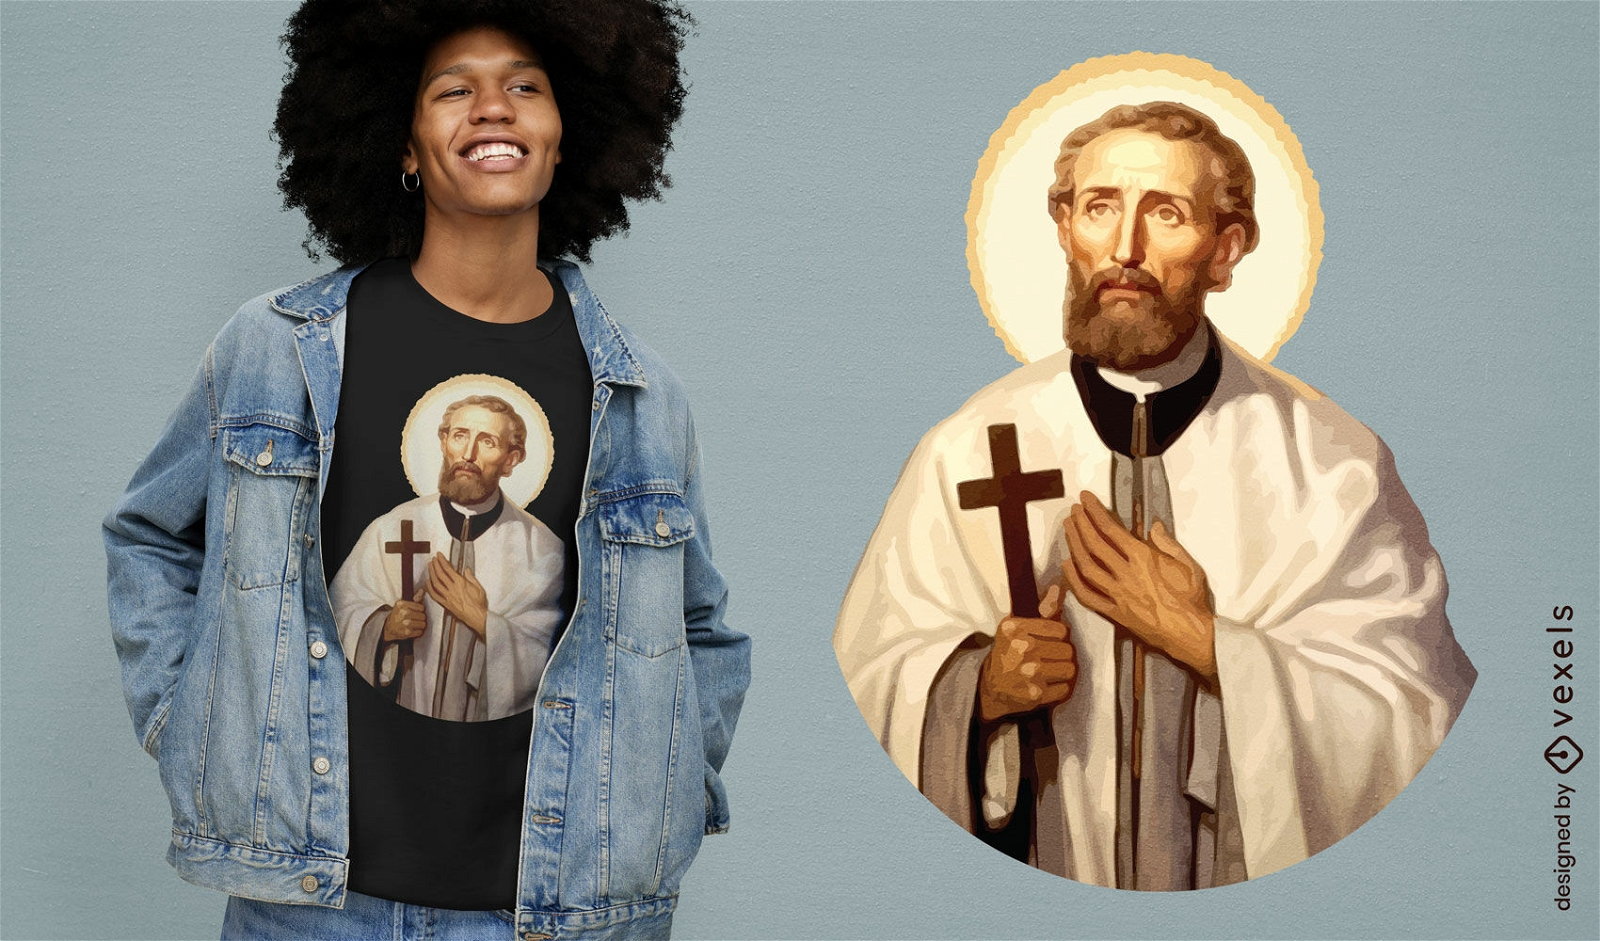 Jesus religious figure t-shirt design